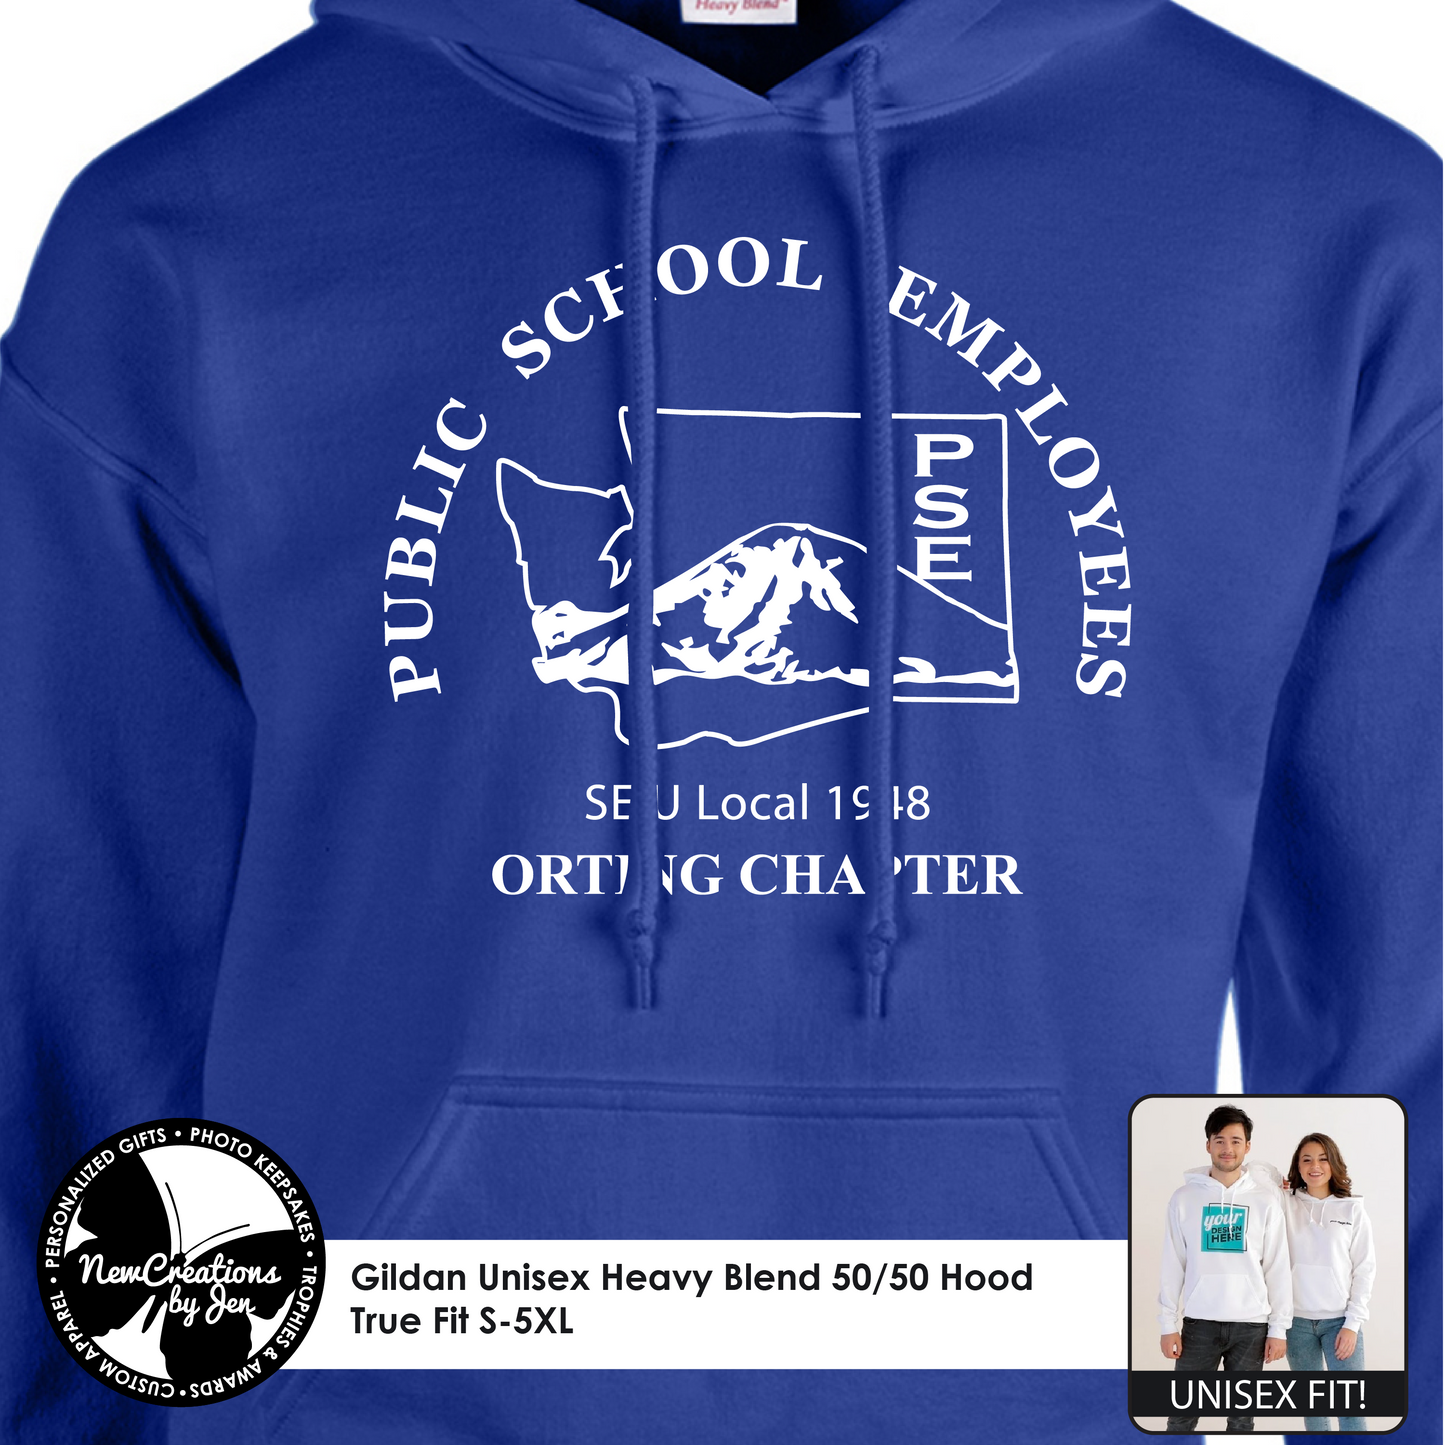 PSE-Orting Hooded Sweatshirt G185